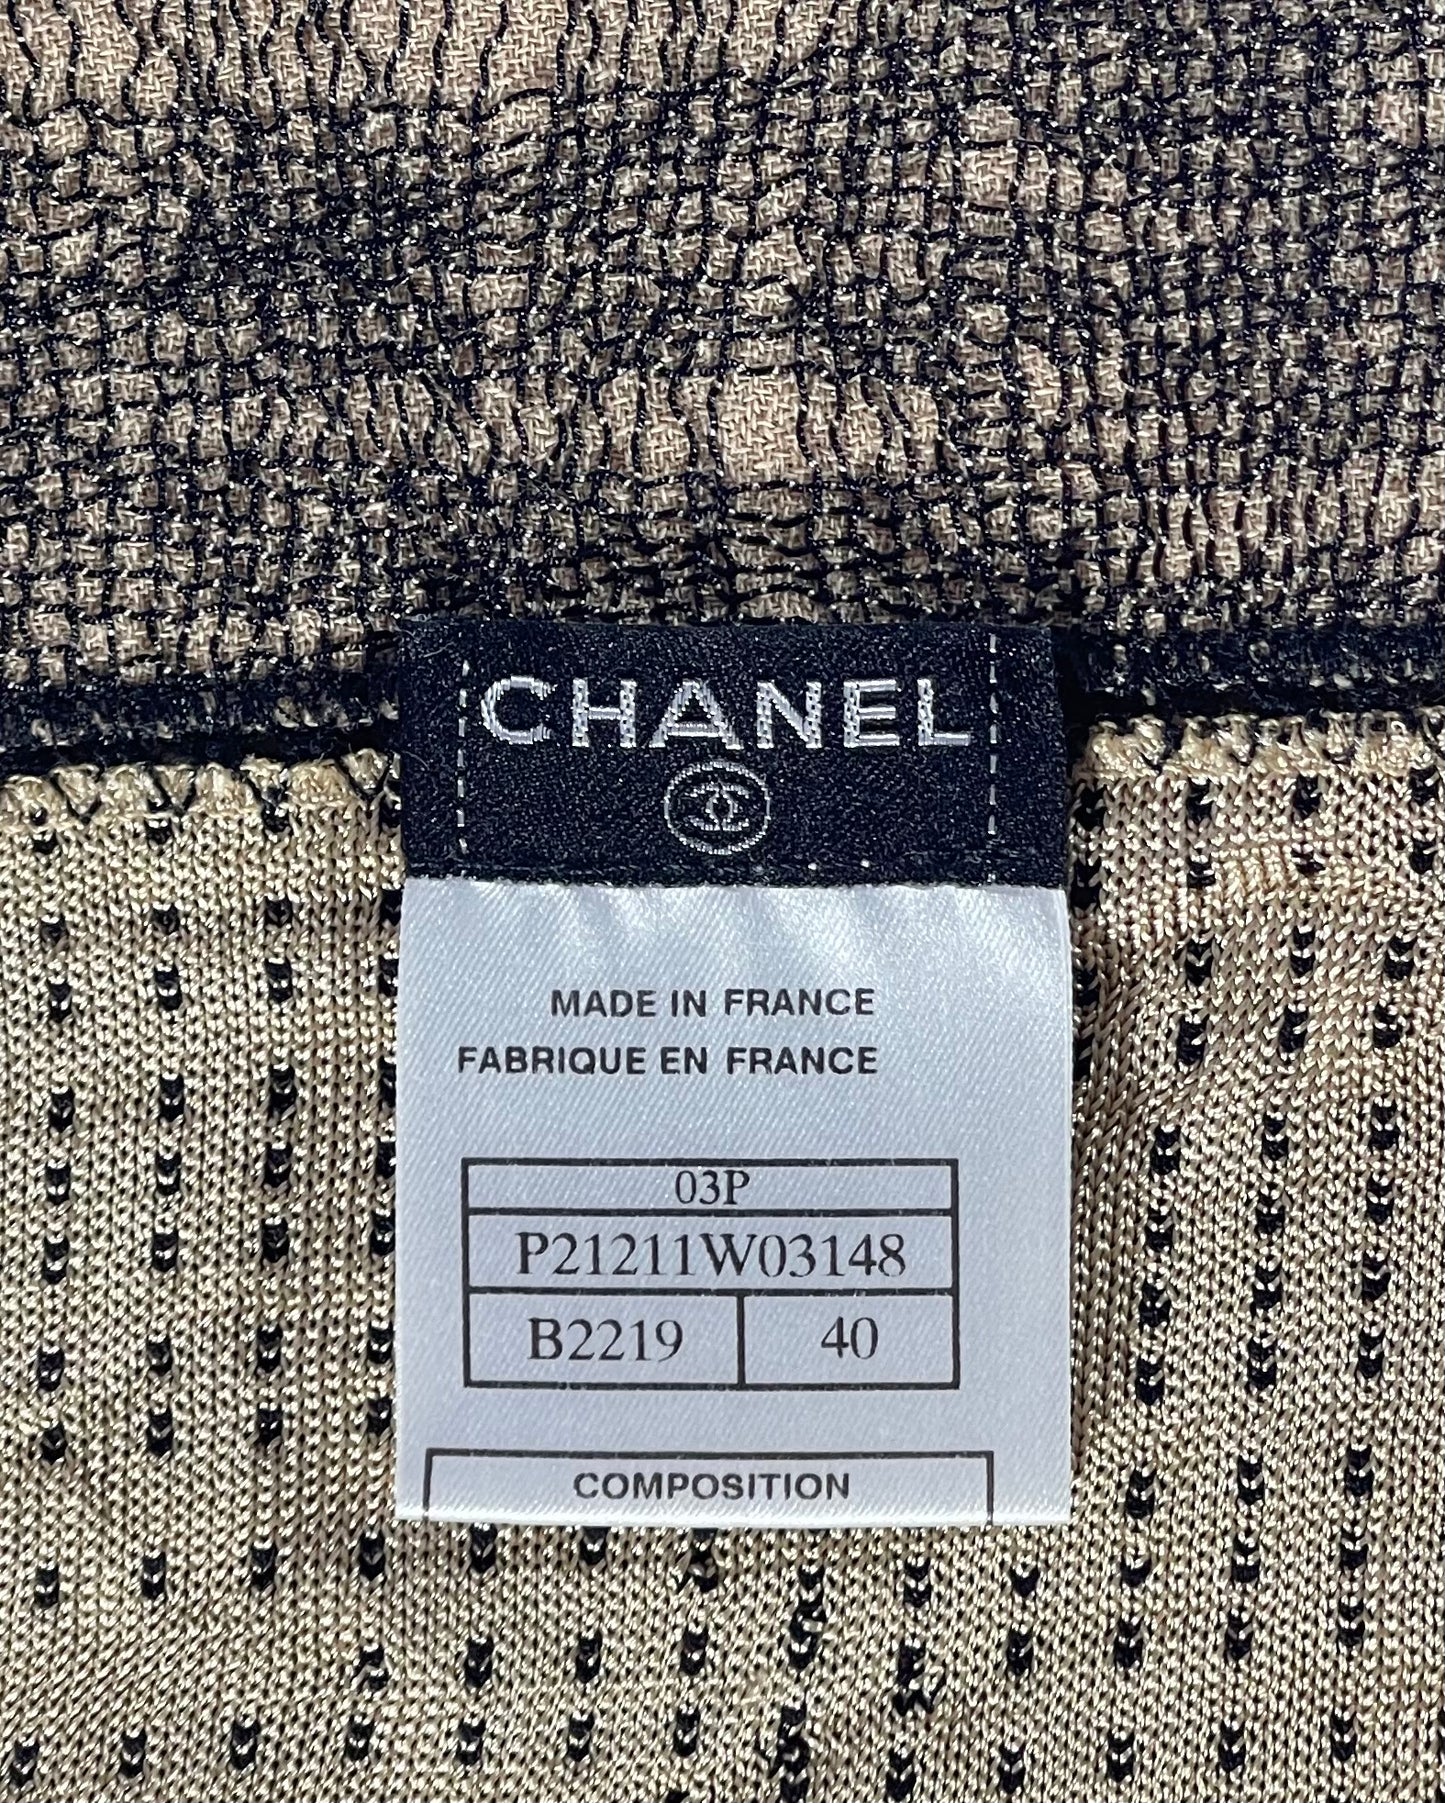 Chanel Vintage 03P Black & Beige Camisole Tank Top Blouse - Size 40